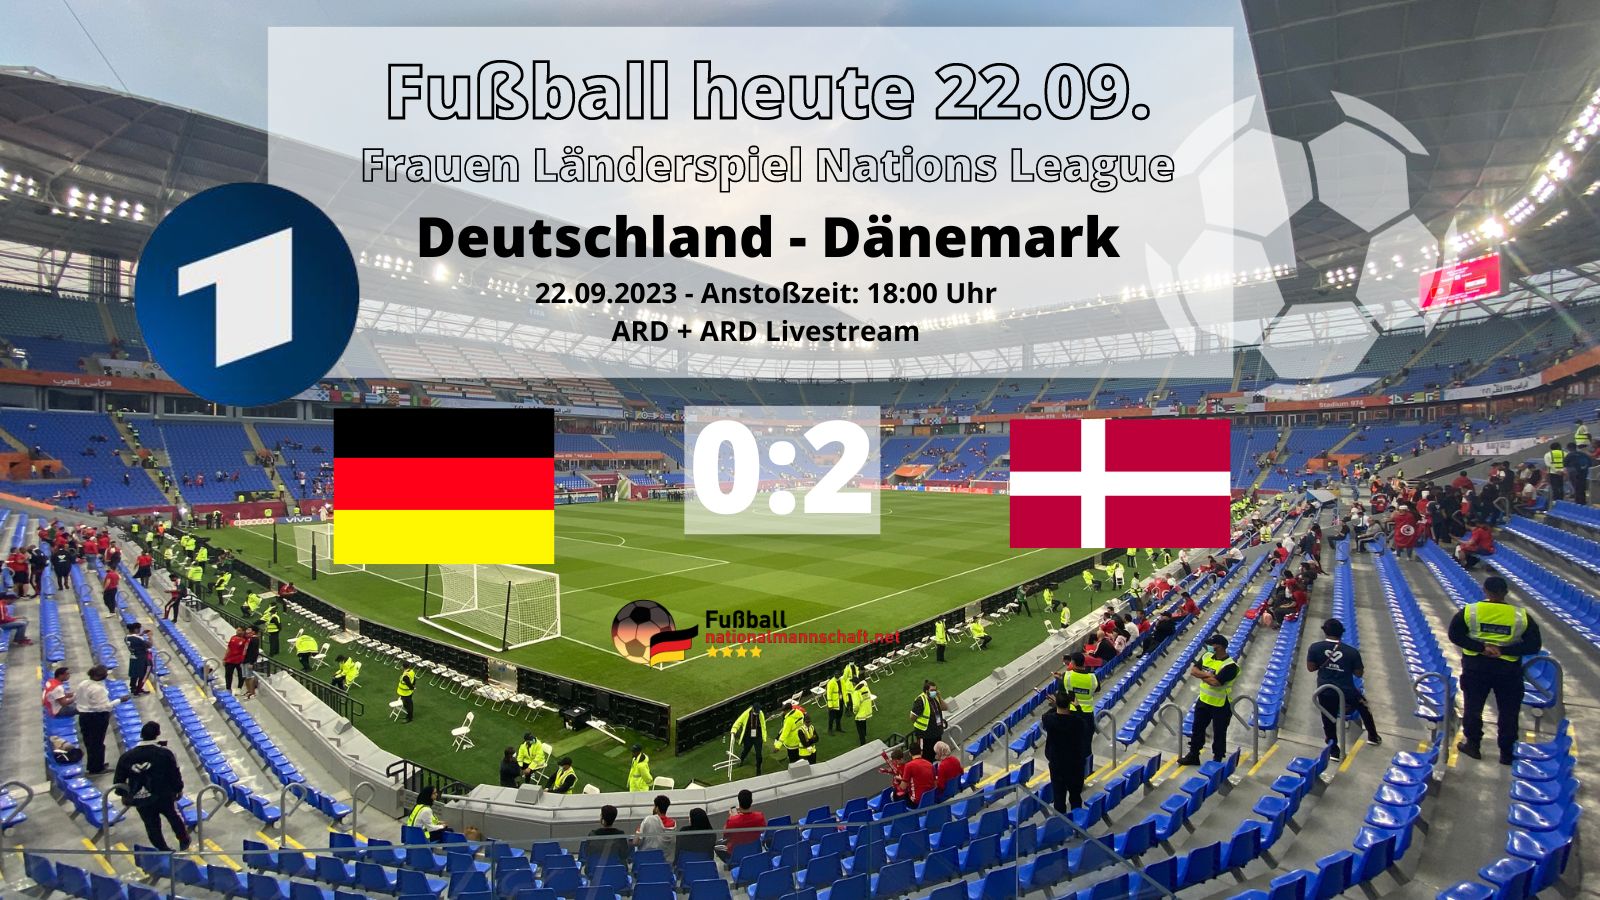 Fußball heute ARD live *2:0* Frauen Länderspiel Dänemark gegen Deutschland